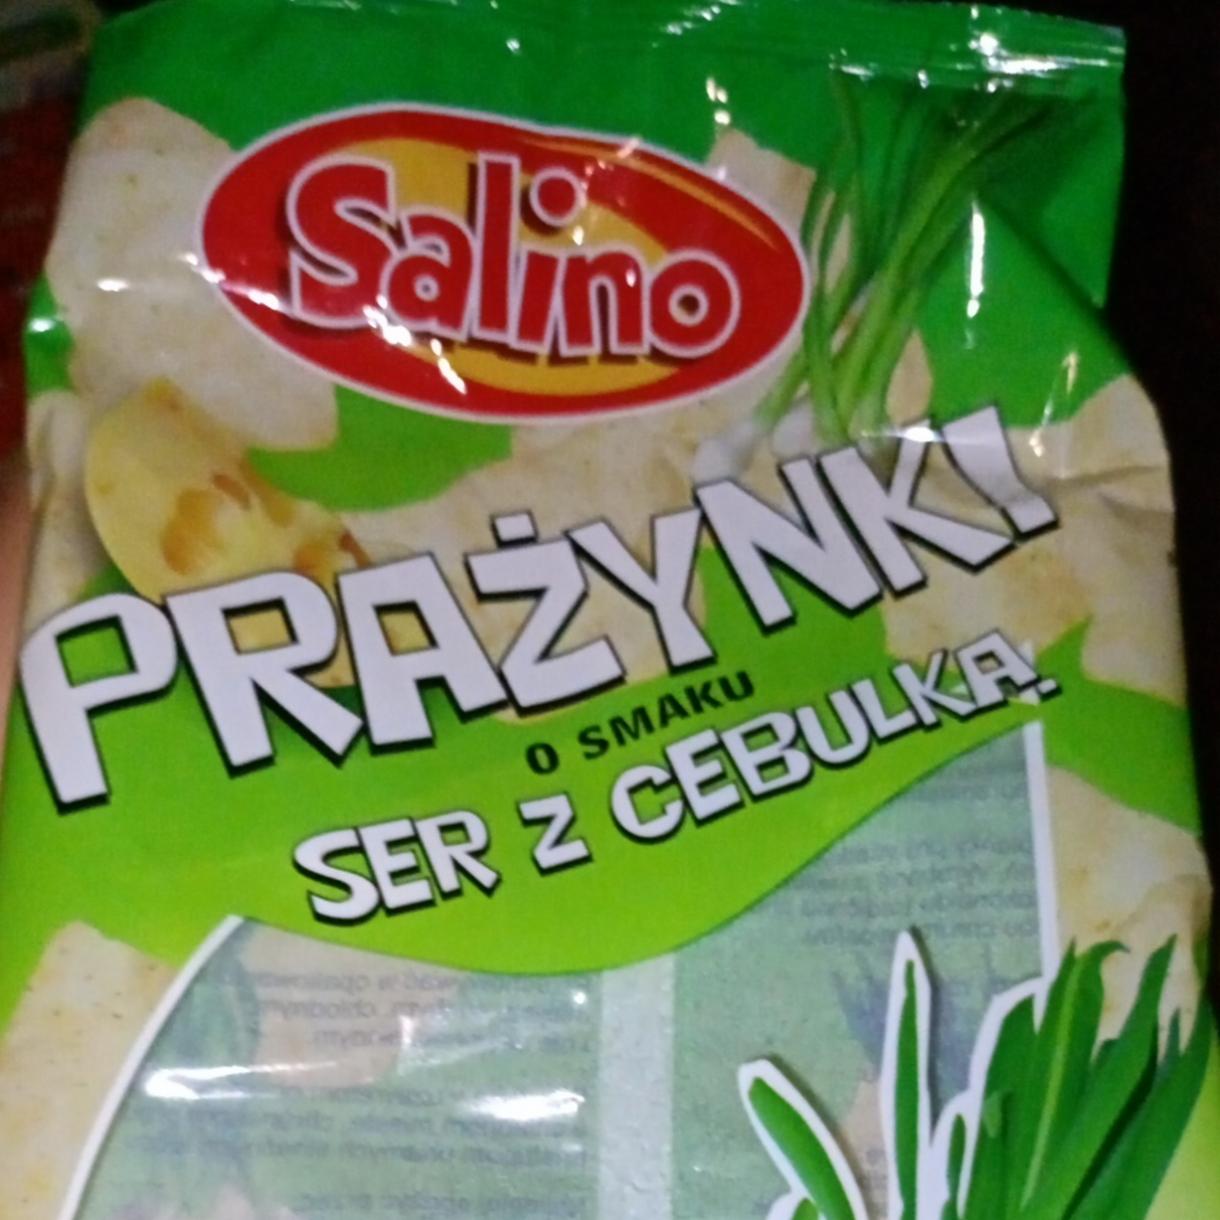 Zdjęcia - Prażynki o smaku ser z cebulką Salino